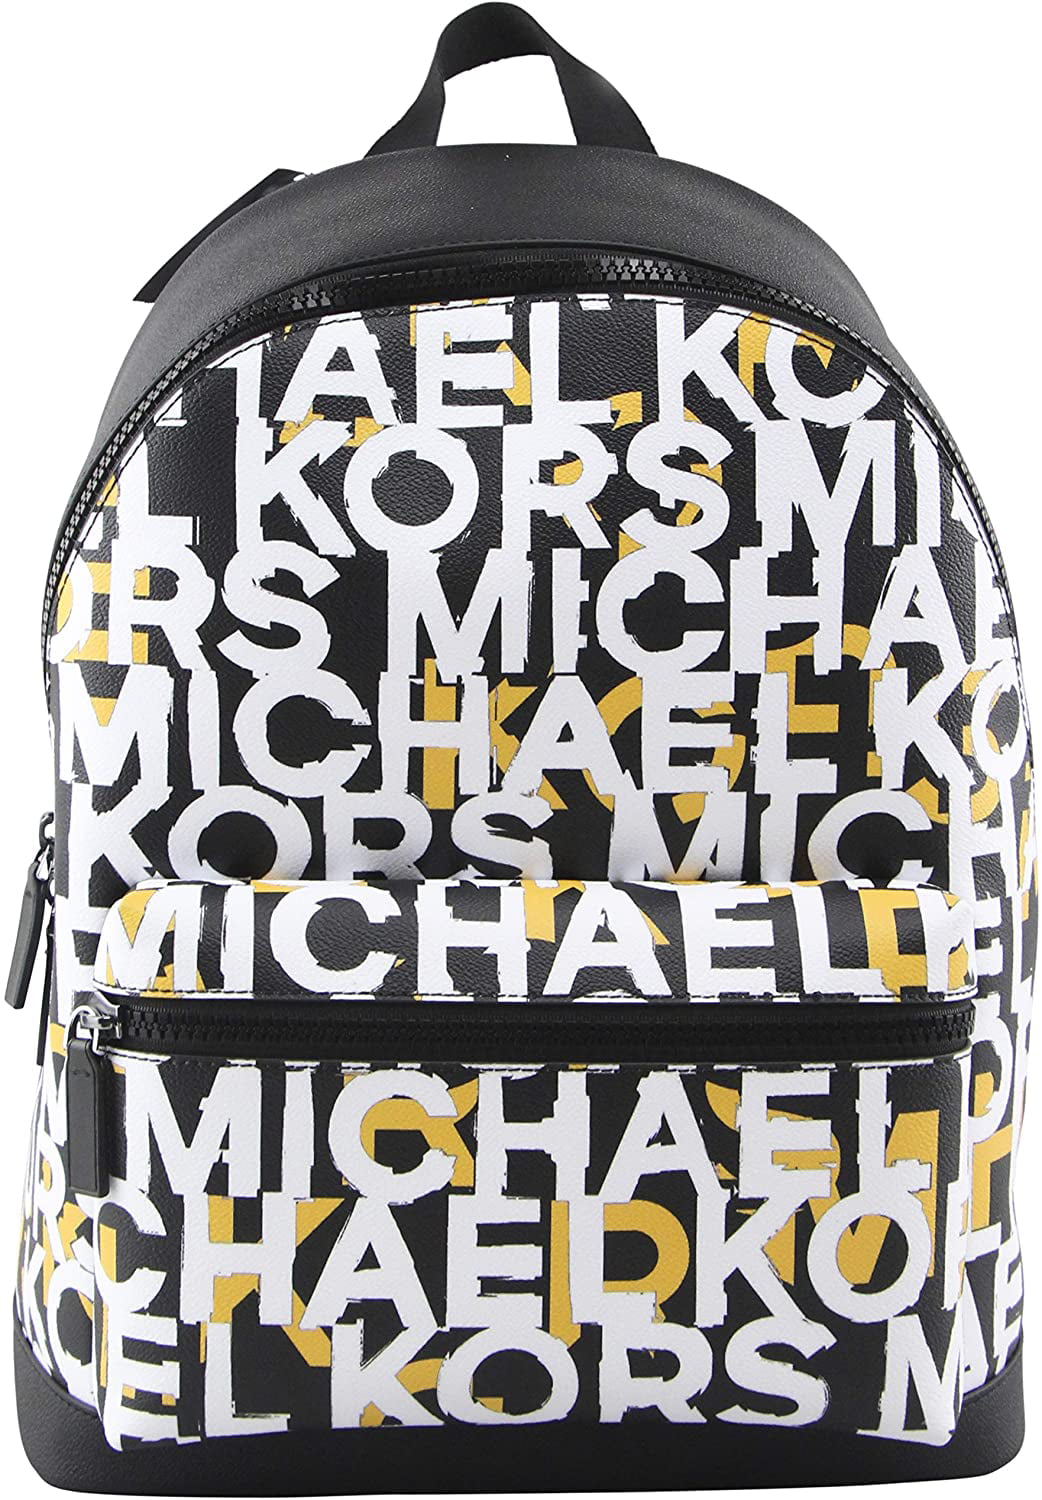 MK backpack purse